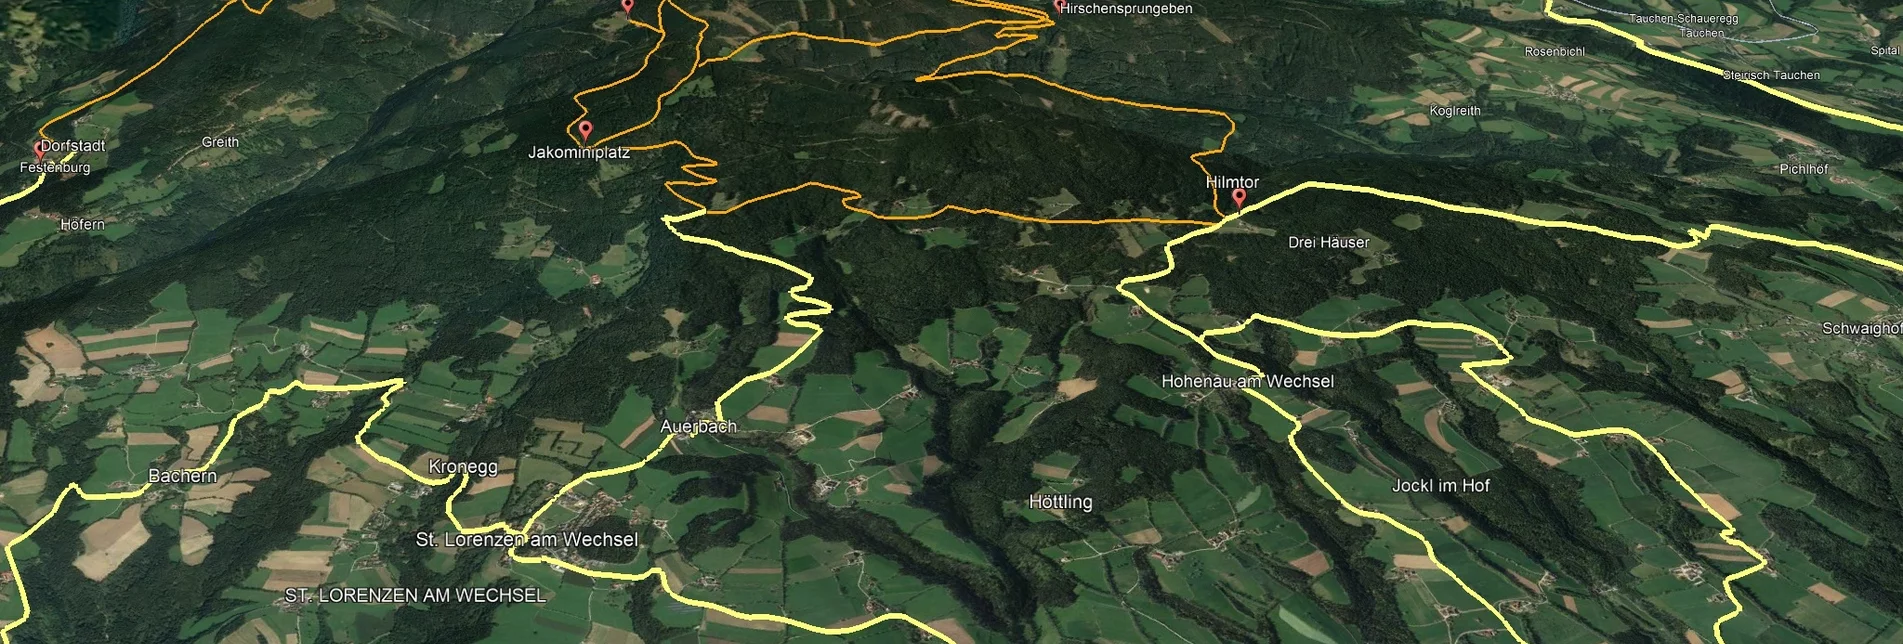 Mountainbike Steirische Wexl Trails - Zubringer Dechantskirchen zum Hilmtor - Touren-Impression #1 | © Verein Tourismusentwicklung Steirischer Wechsel